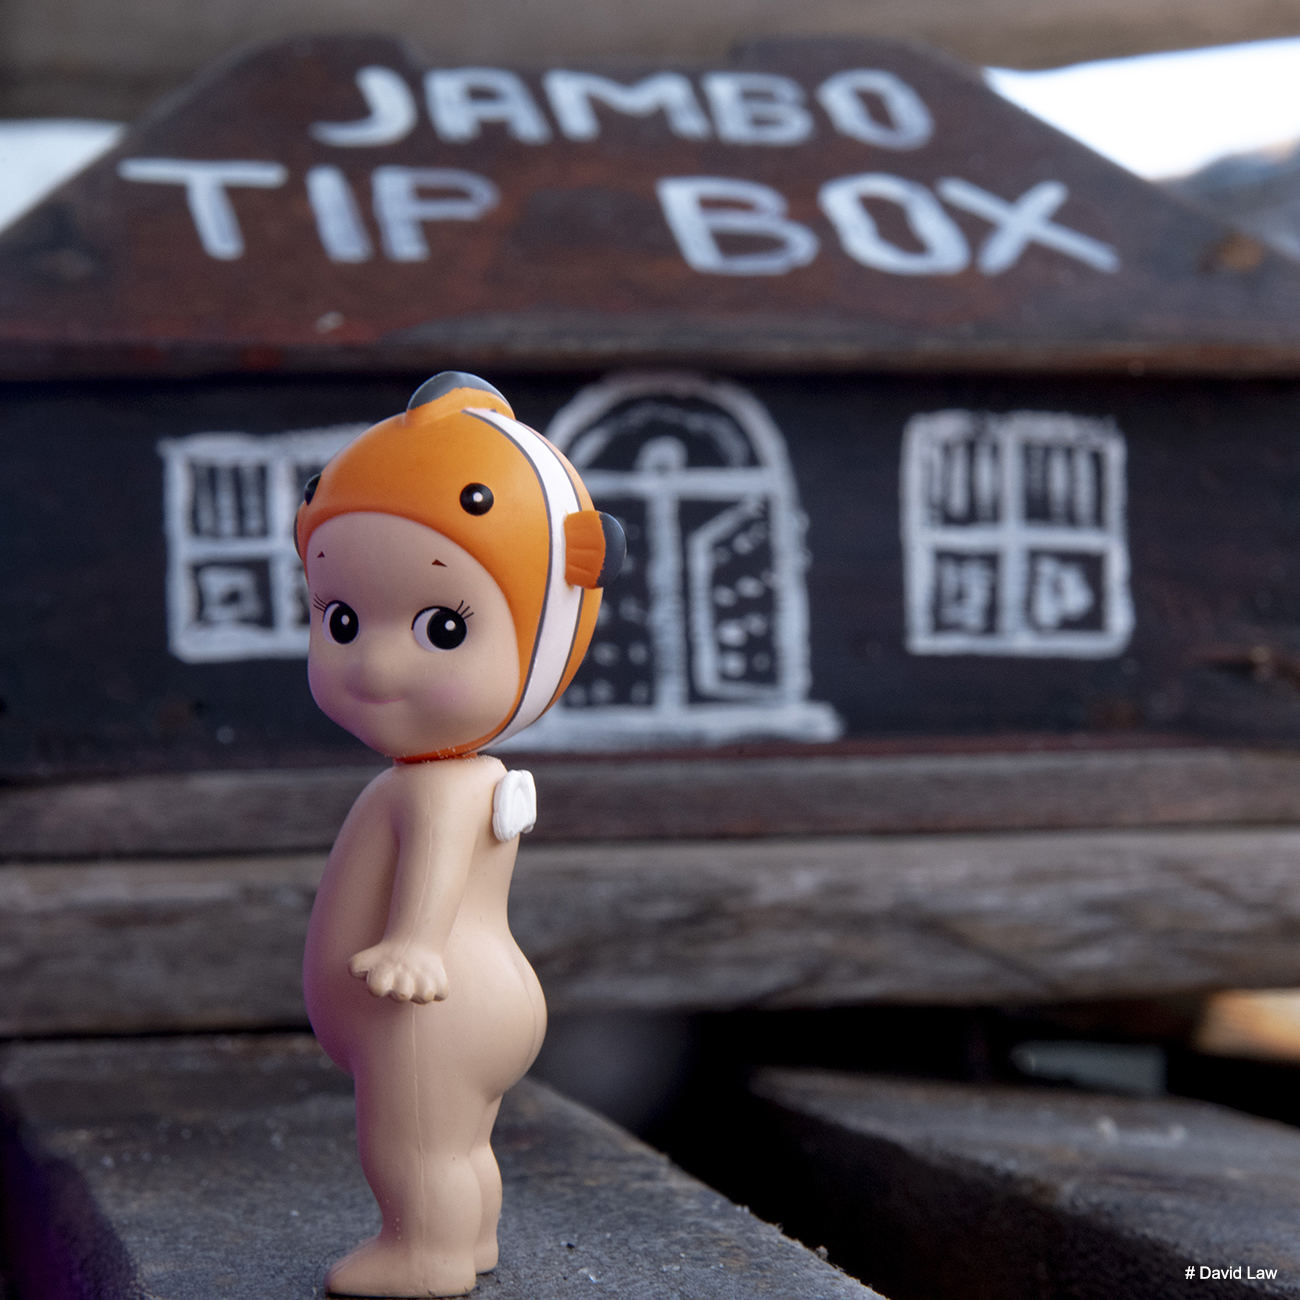 Jambo Tip Box square copie